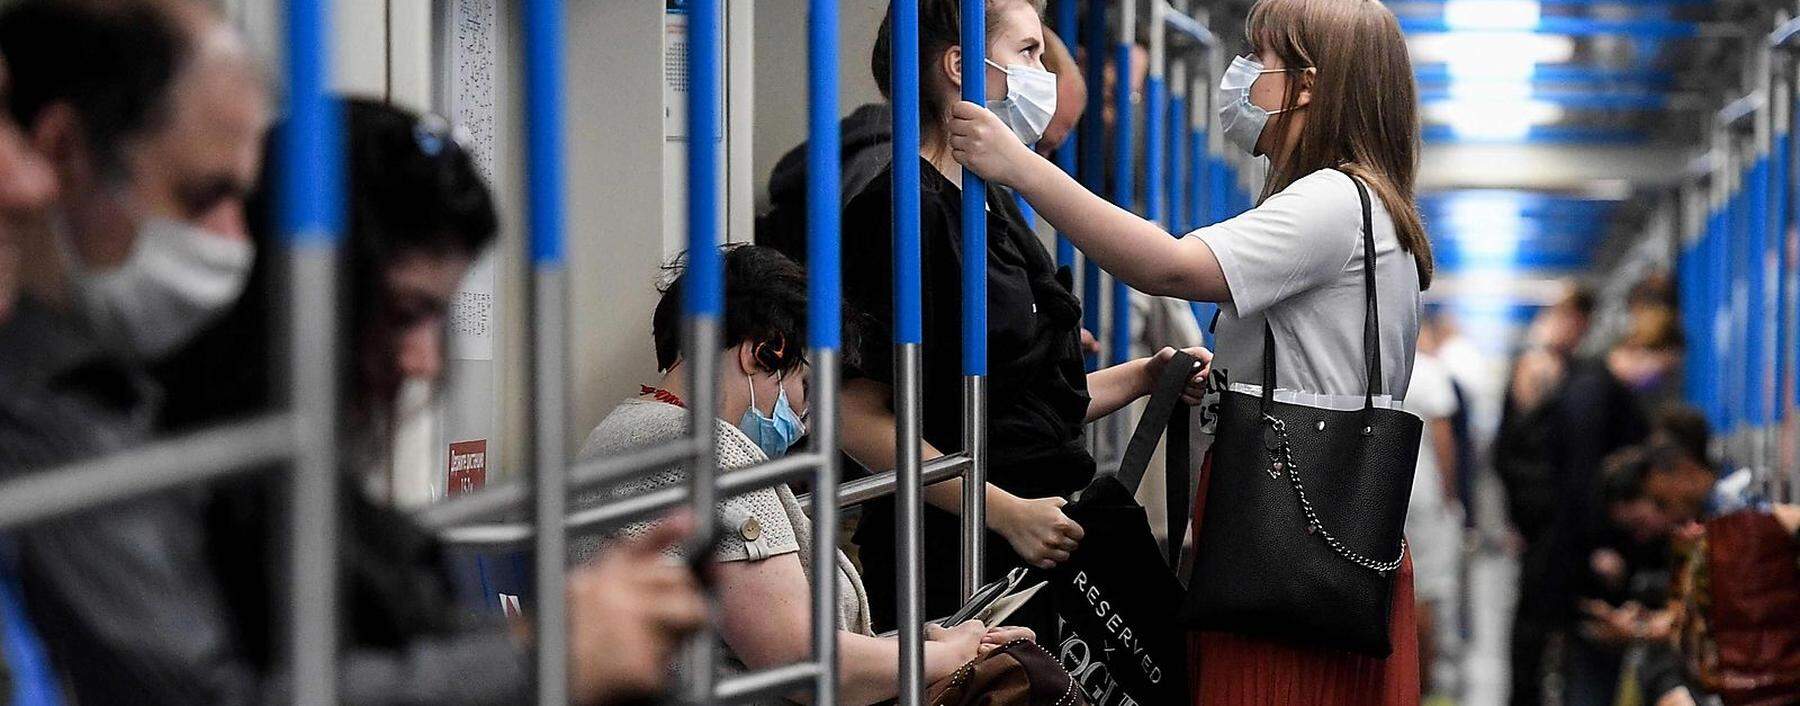 Berechtigte Angst vor Innenräumen: ein U-Bahn-Zug in Moskau, wo auch Maskenpflicht herrscht.